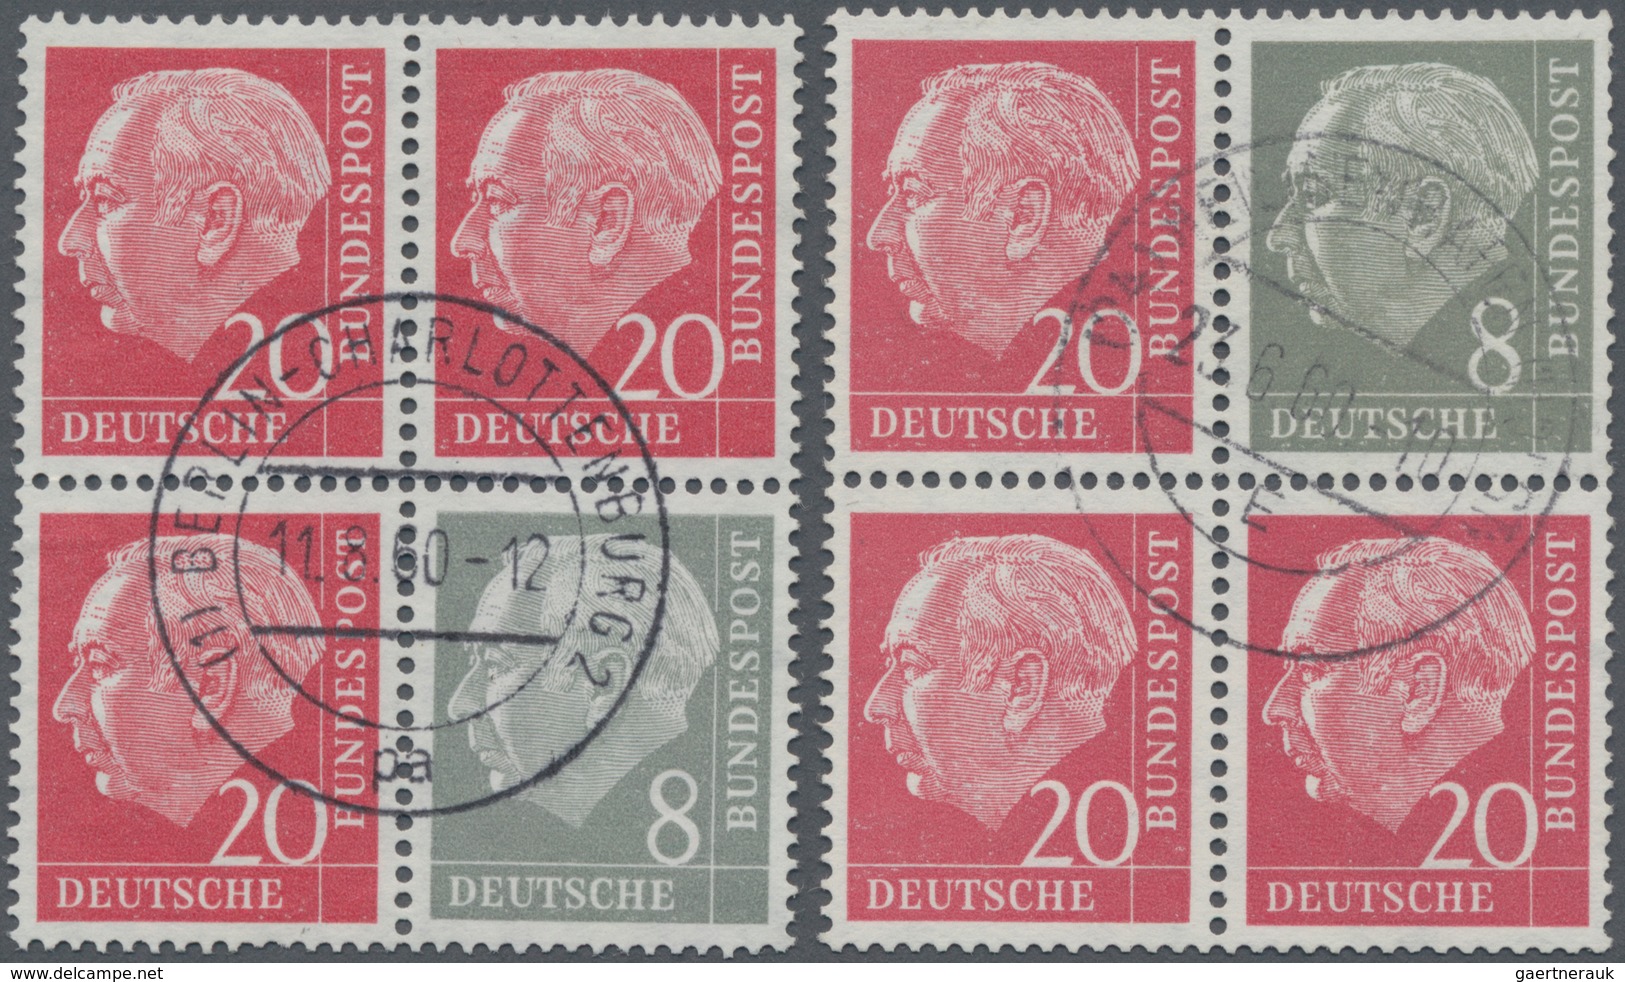 Bundesrepublik - Zusammendrucke: 1960, Heuss Liegendes WZ, Senkr. Zusammendruck 8+20 Pfg. Erstauflag - Se-Tenant